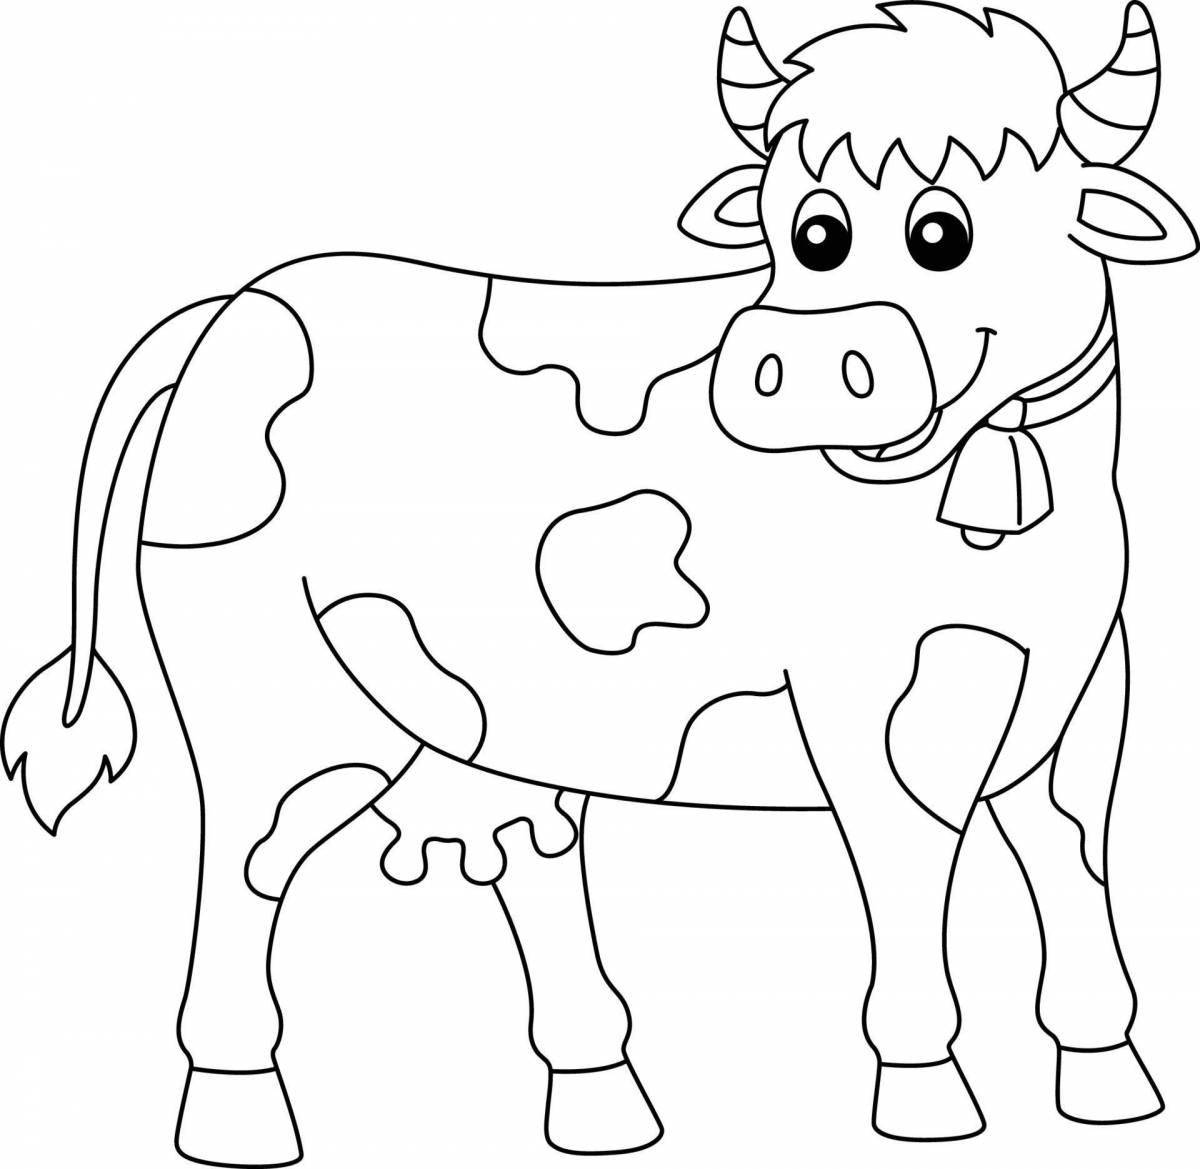 Раскраска чудесная корова для детей 4-5 лет